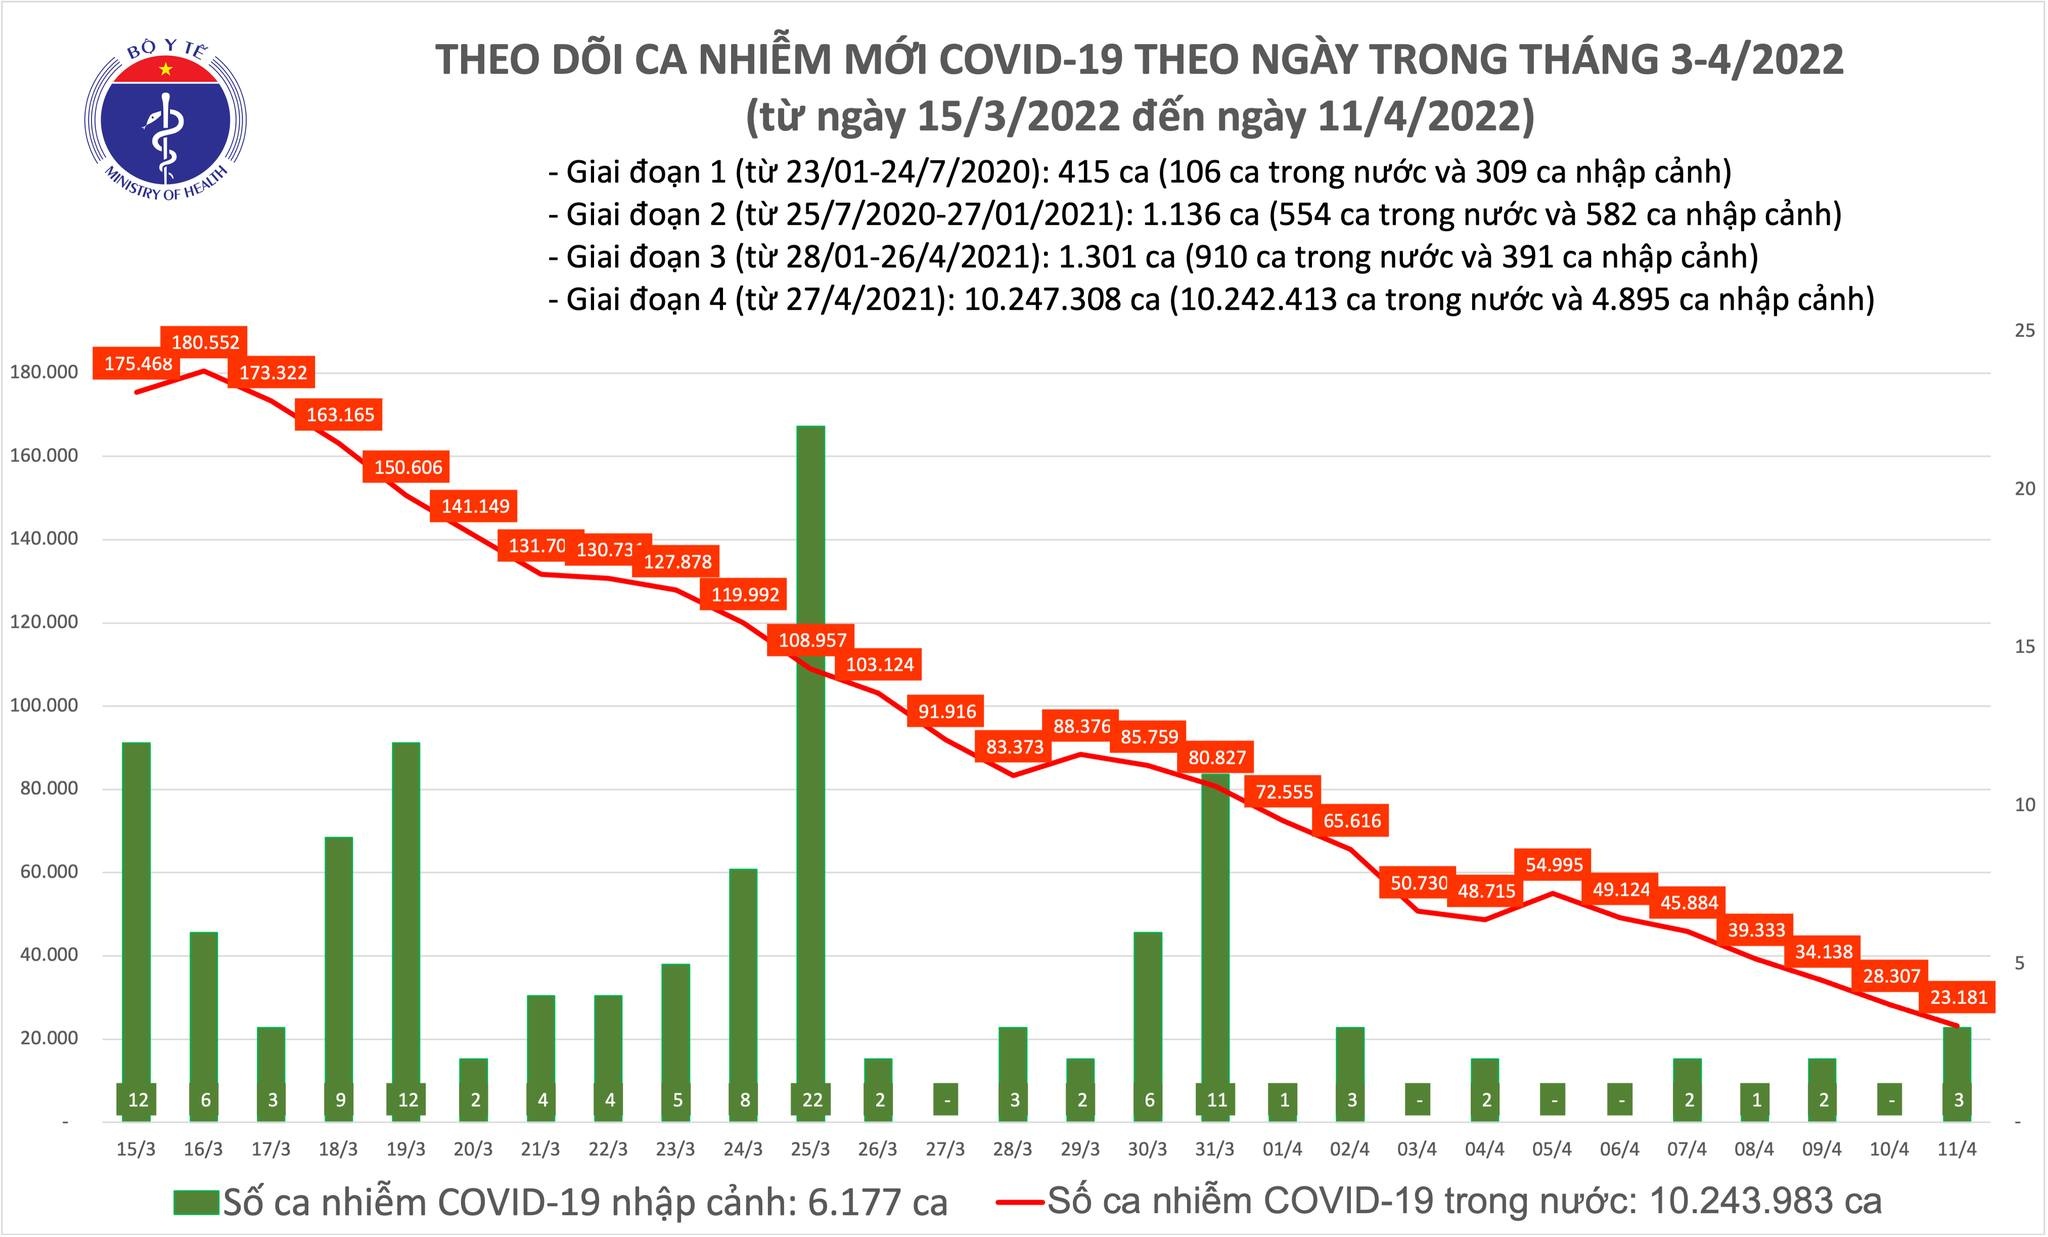 Việt Nam ghi nhận 23.181 ca mắc COVID-19 trong ngày 11/4